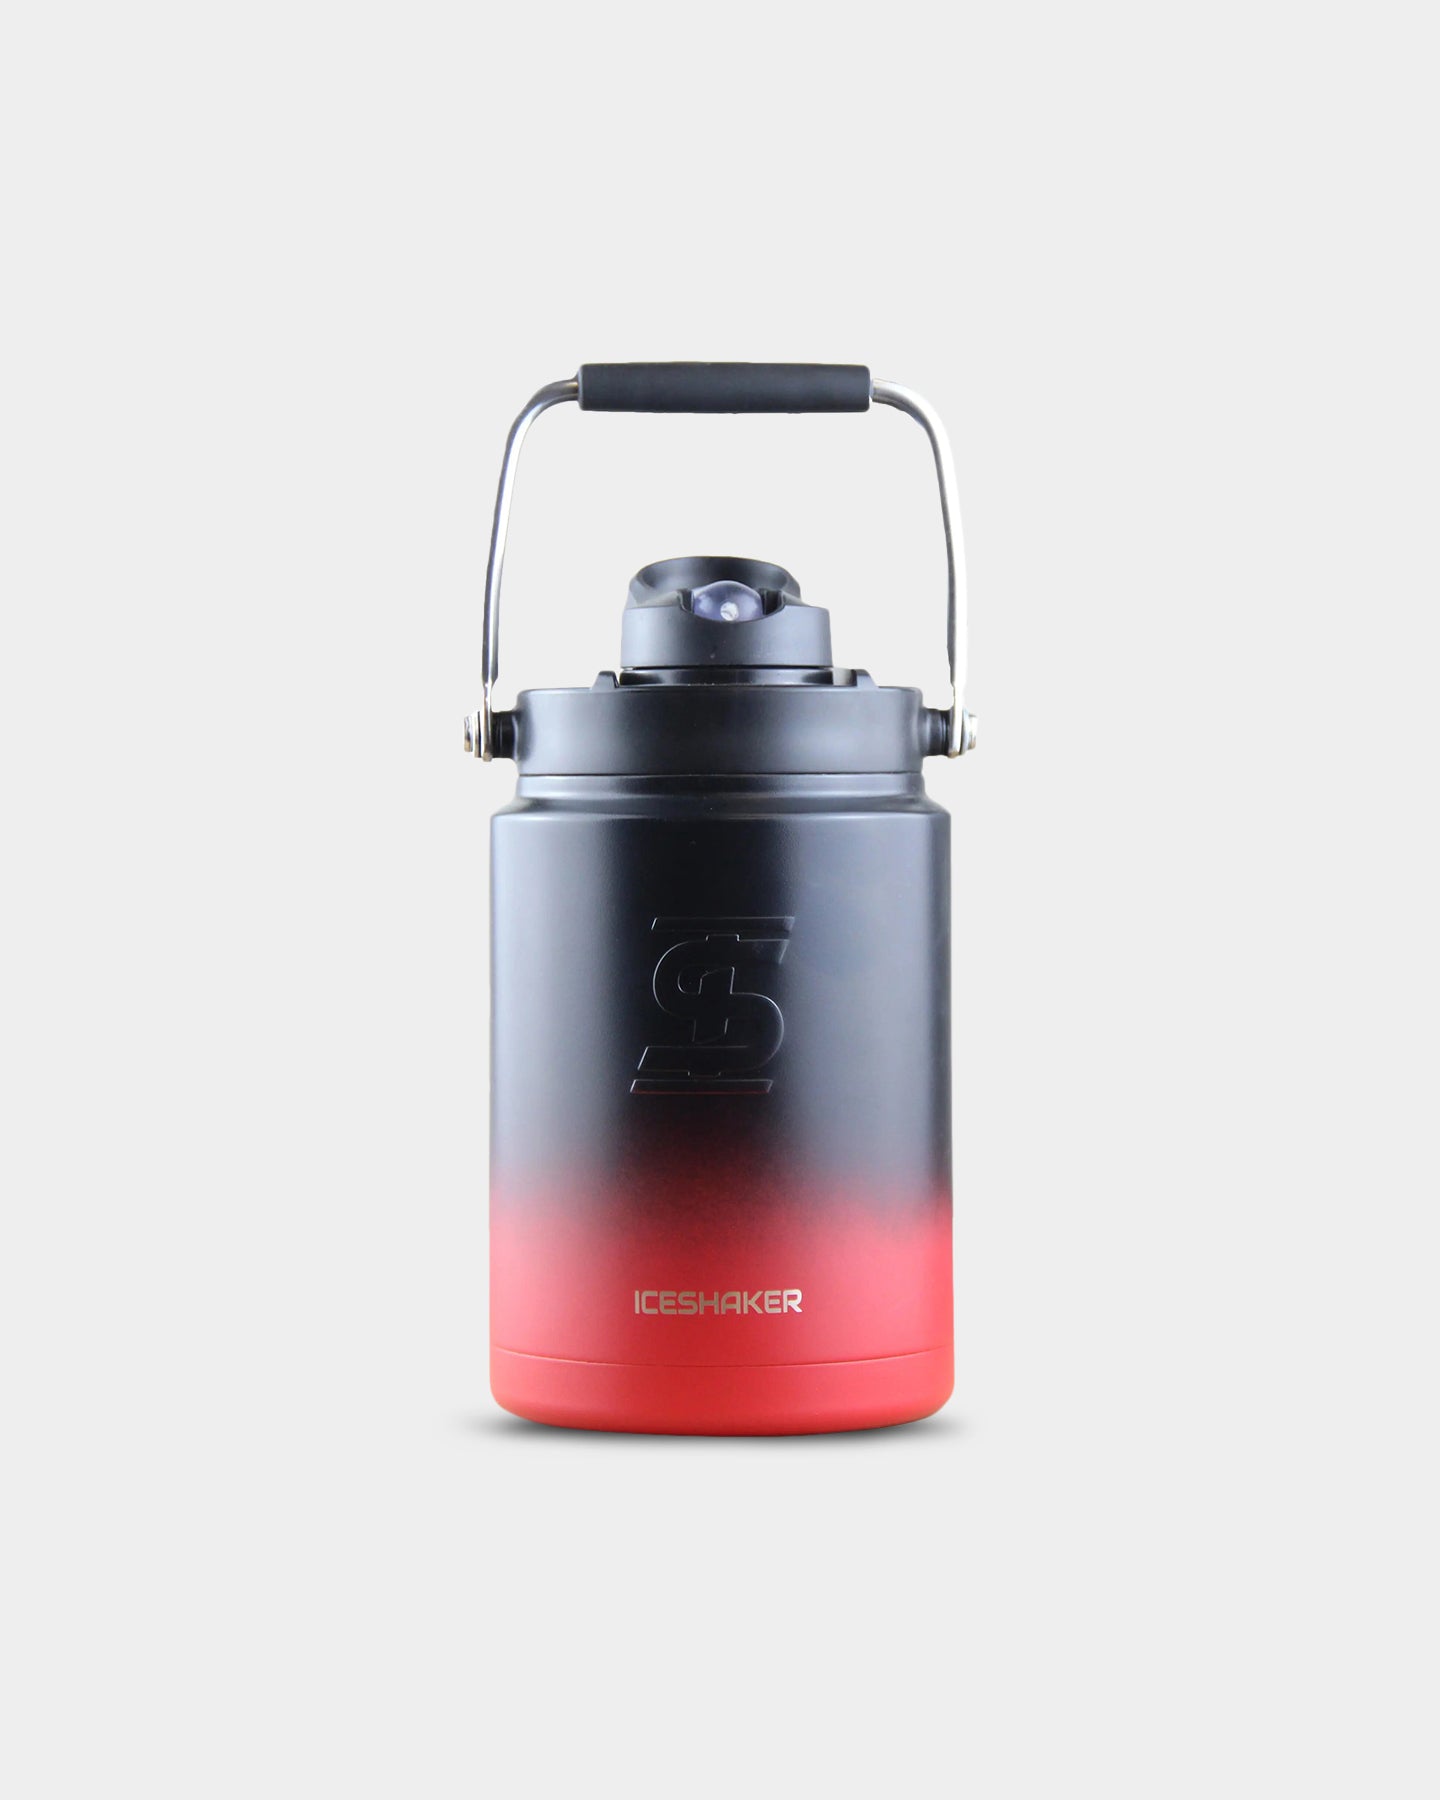 Ice Shaker 26oz Bottle - Red